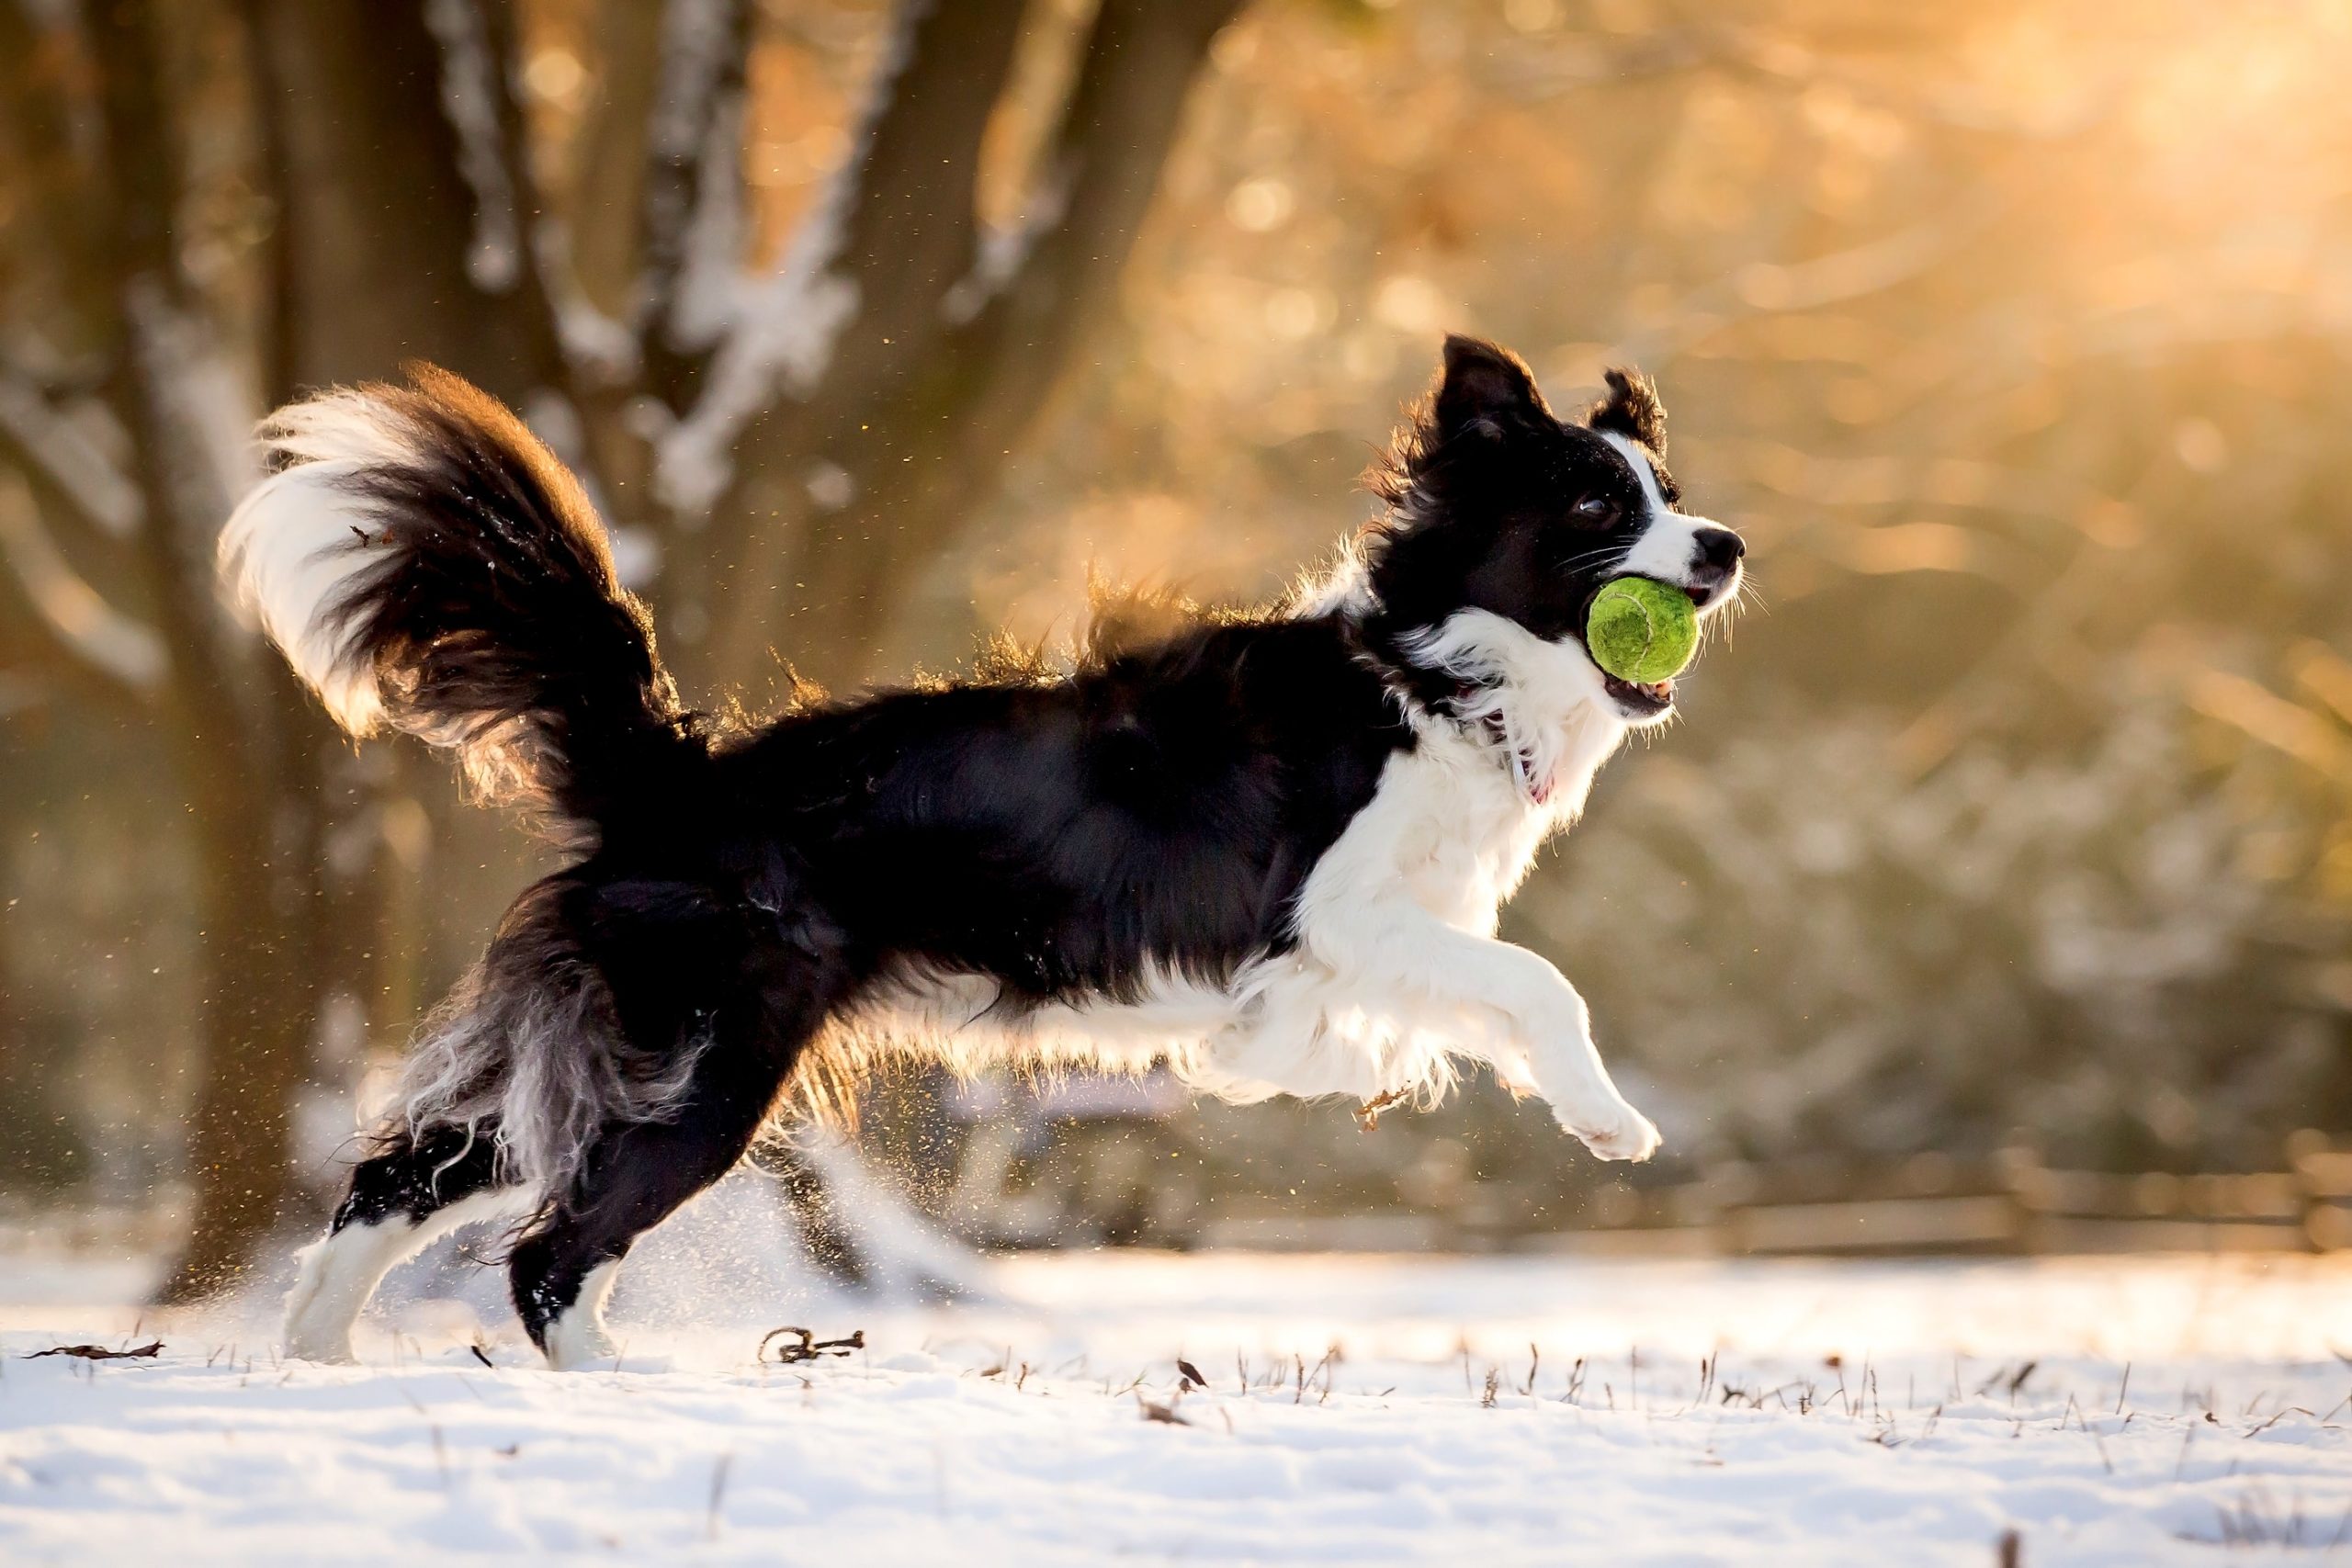 Avbildet: hund leker med ball